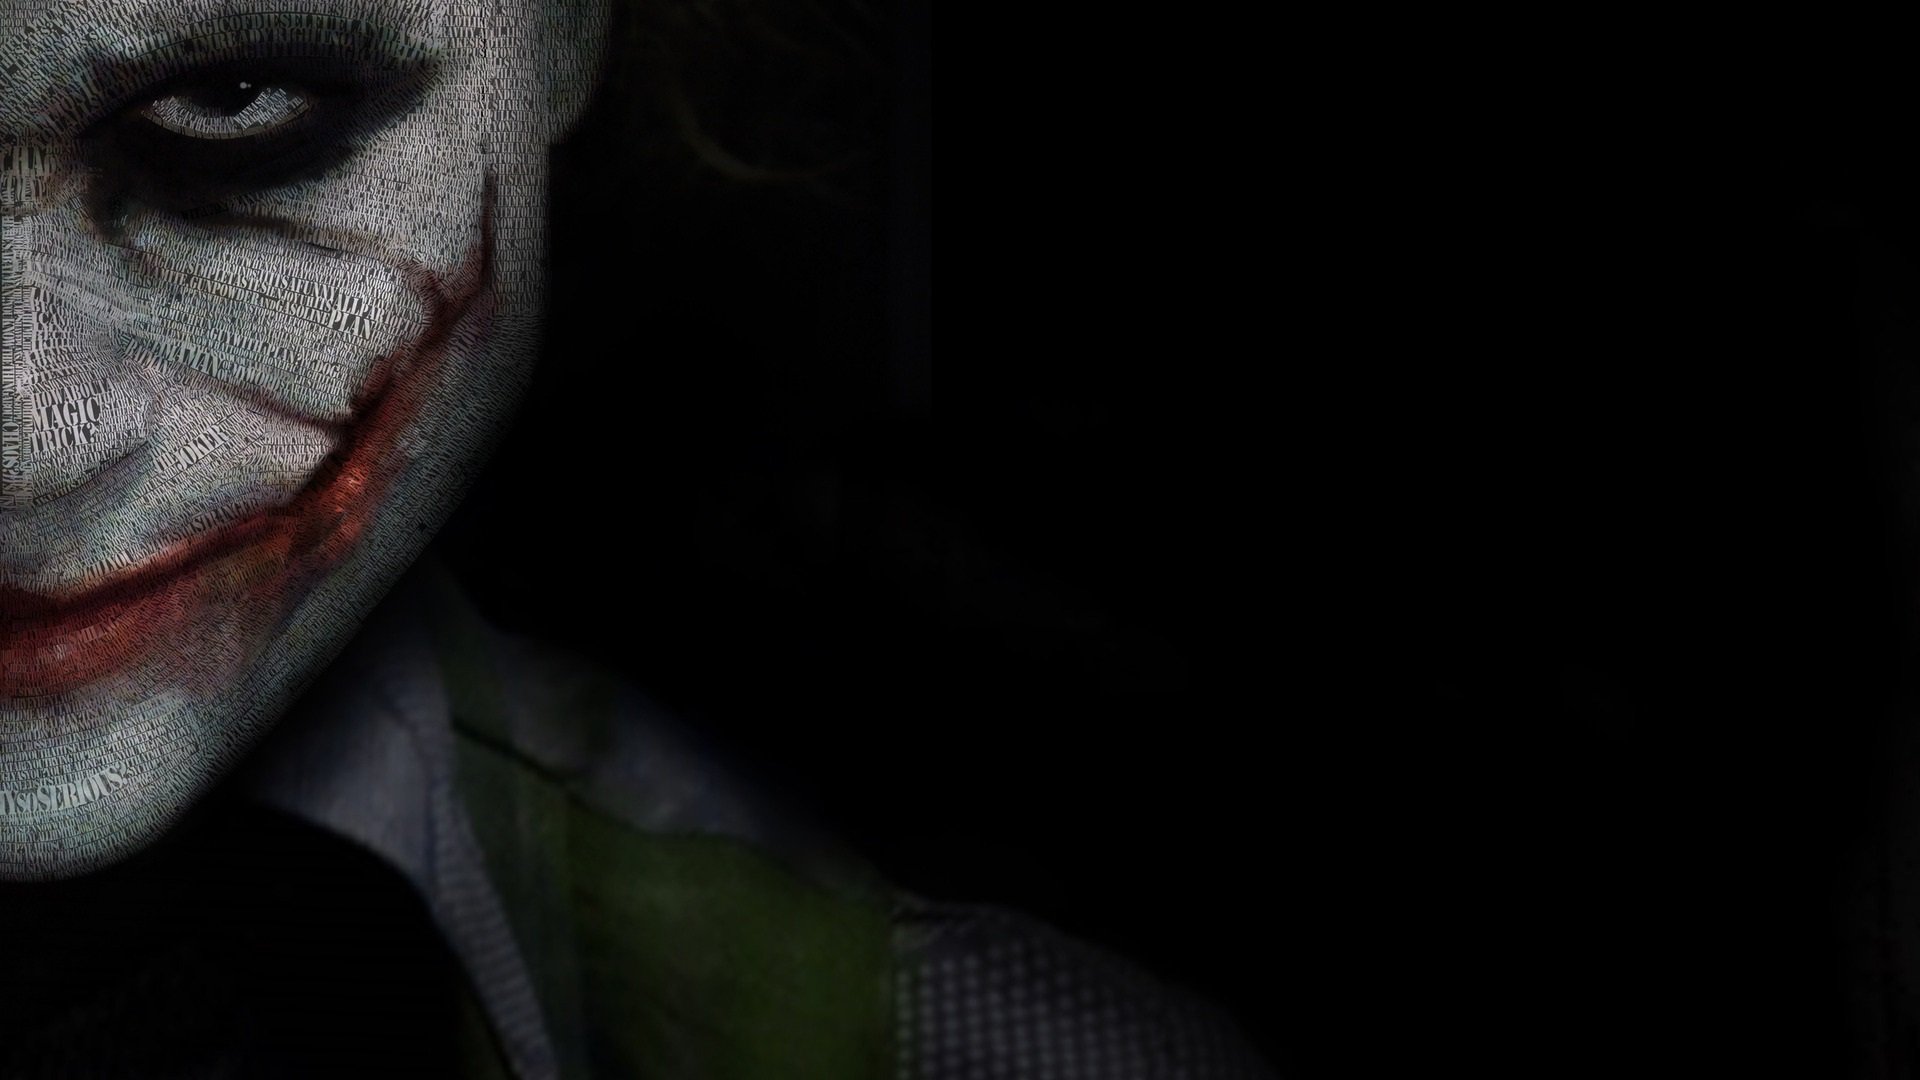 Wallpaper S The Joker Full HD 1080p